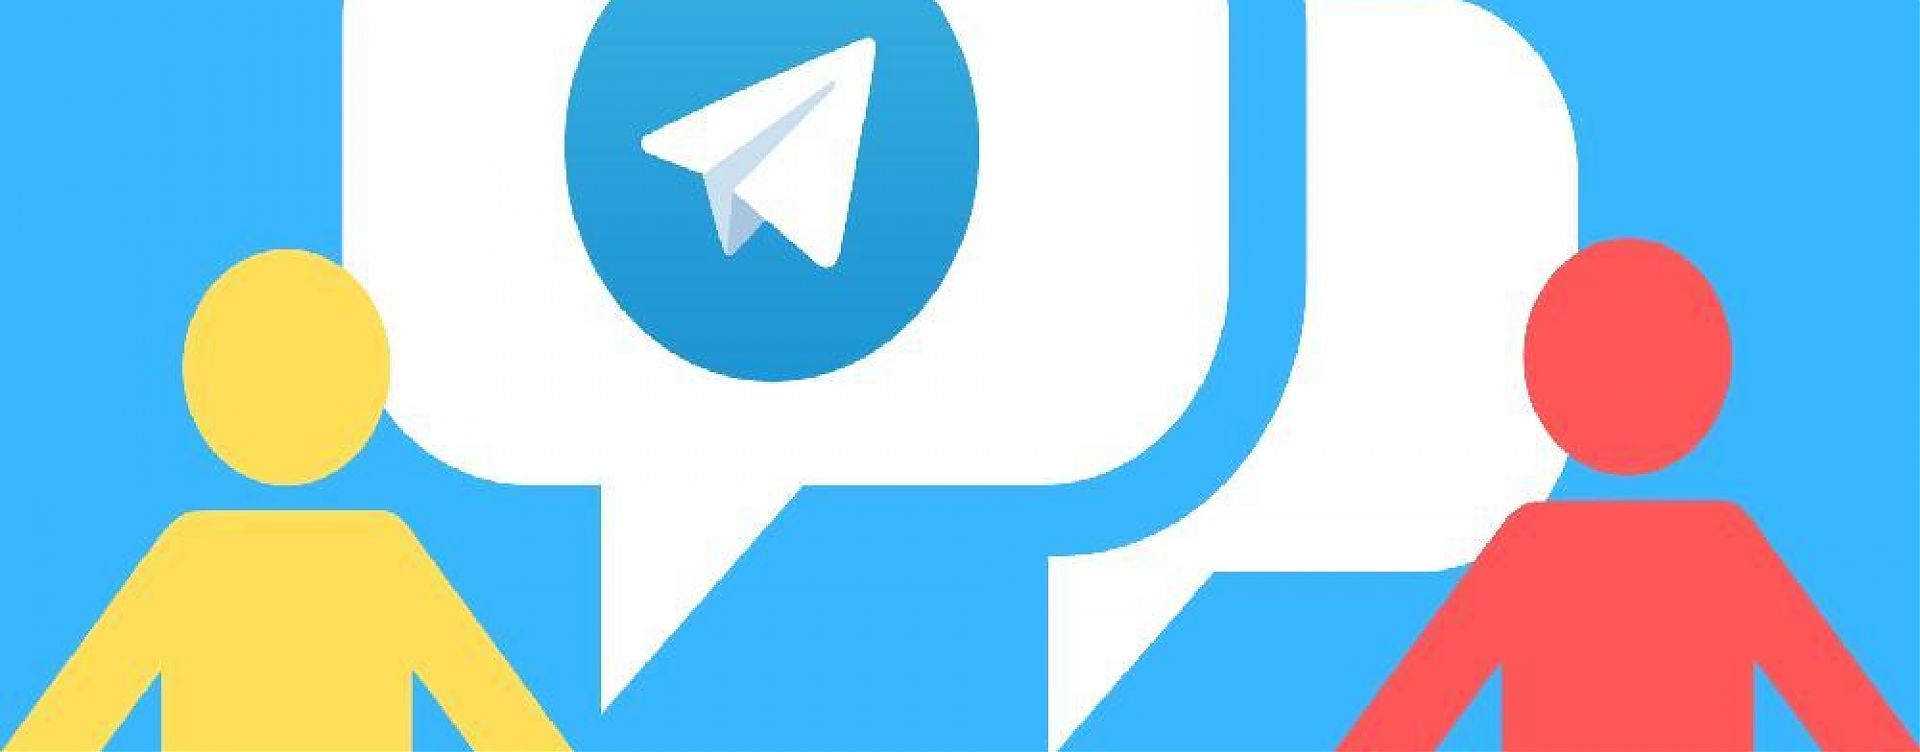 Как набрать подписчиков в Телеграм - сервисы, проги и советы на 5+